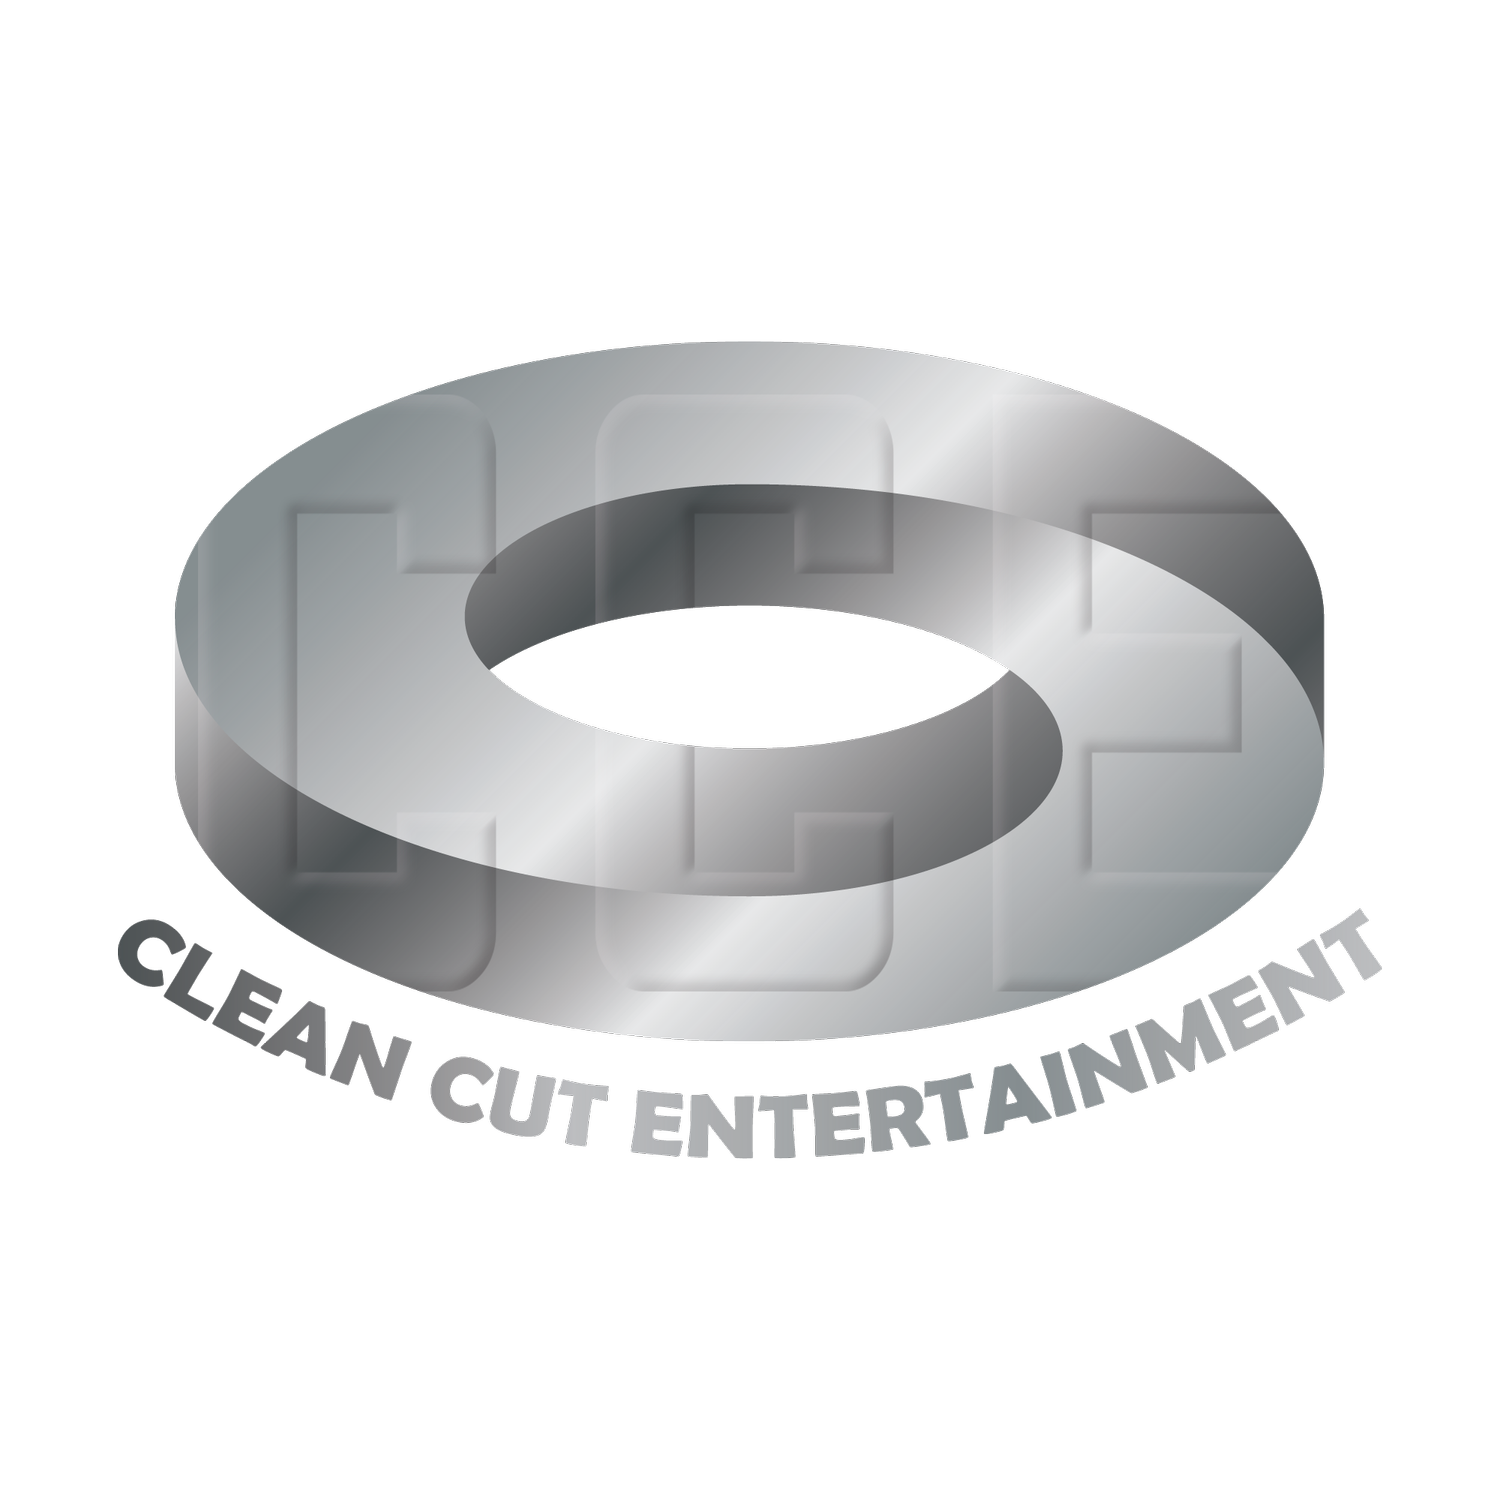 Clean Cut Entertainment